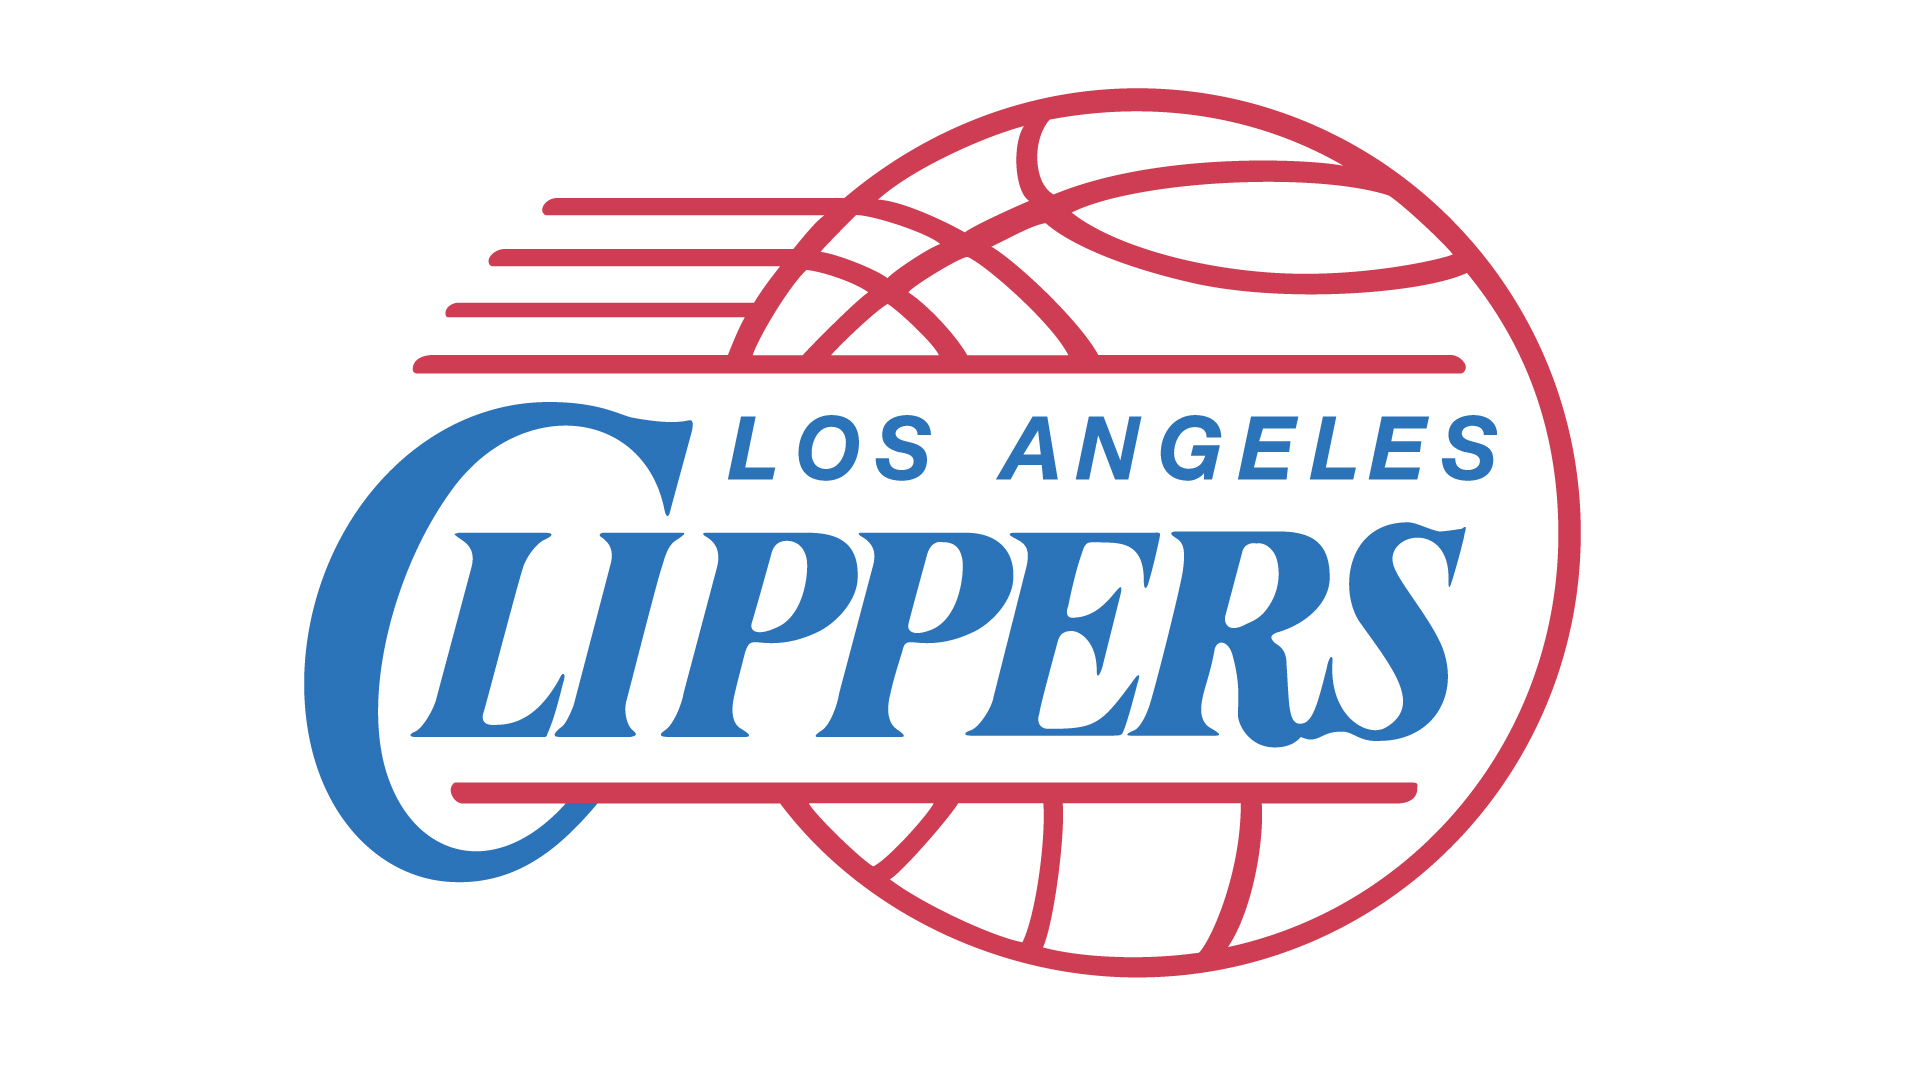 Скачать обои бесплатно Баскетбол, Нба, Виды Спорта, Лого, Лос Анджелес Клипперс картинка на рабочий стол ПК